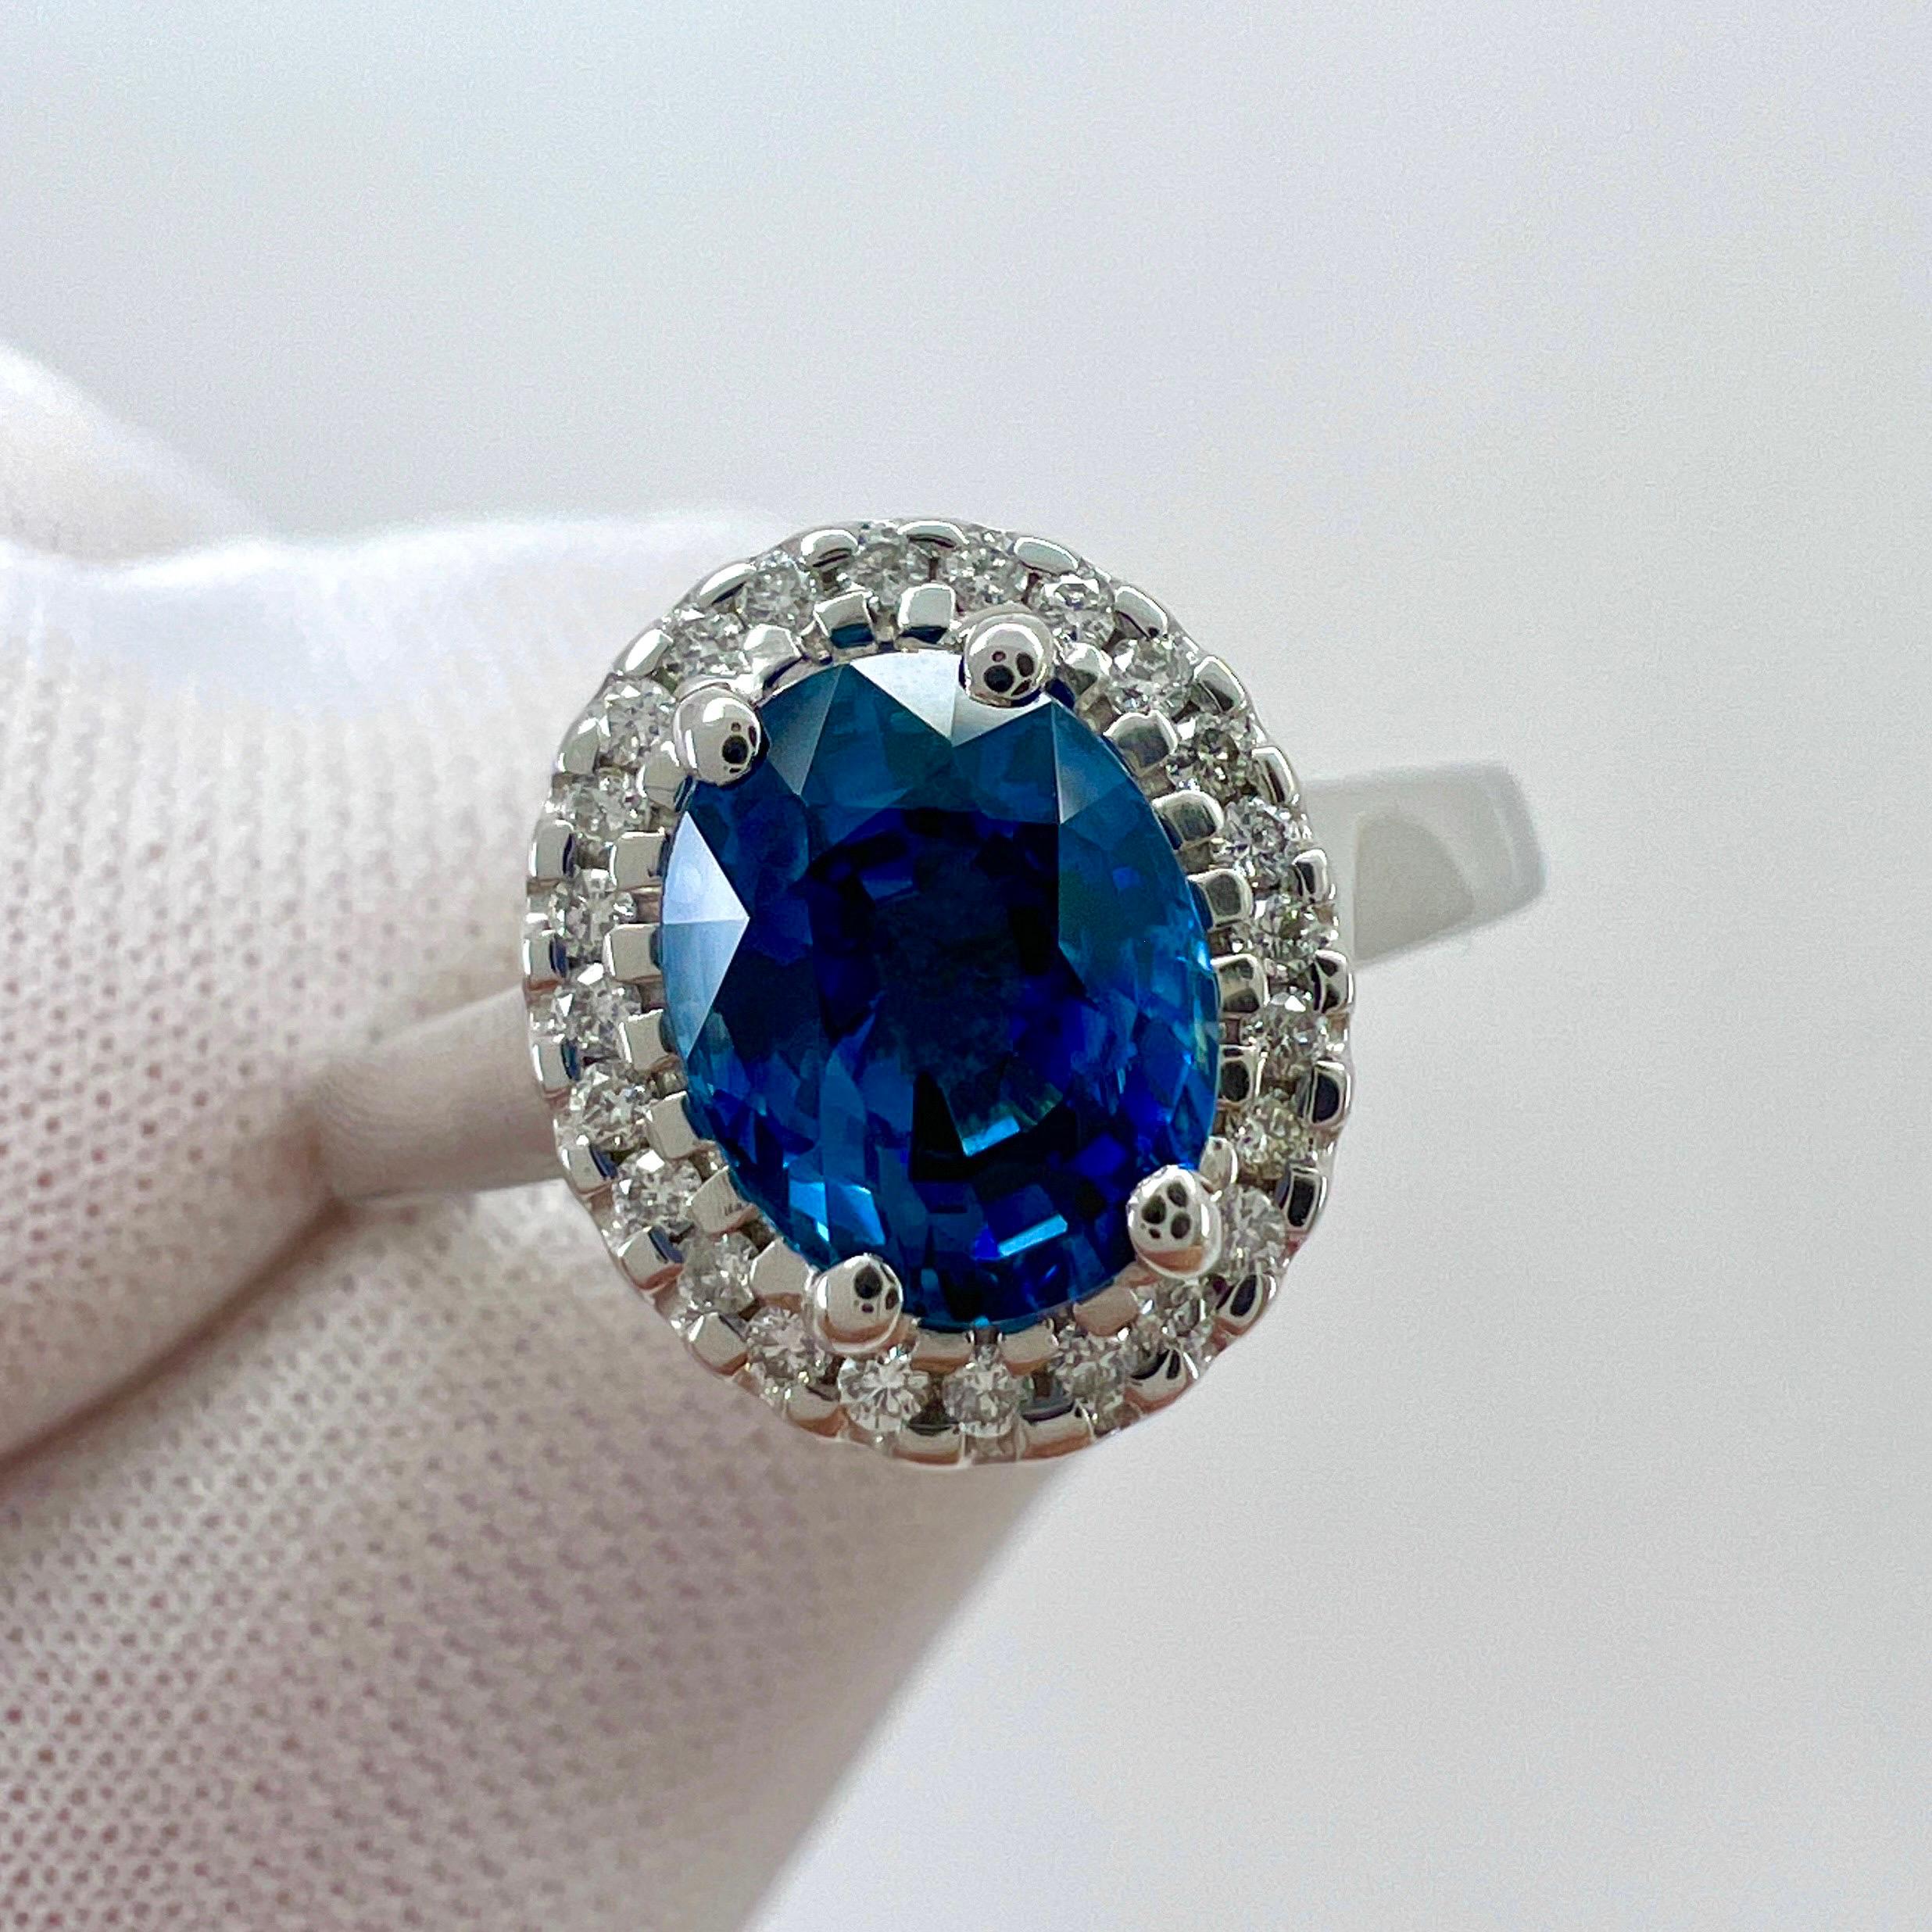 Fine Ceylon Blue Oval Cut Sapphire & Diamond 18k White Gold Halo Ring.

Saphir de Ceylan central de 1,56 carat d'une belle couleur bleu vif et d'une excellente clarté. VVS.
Ce saphir est d'origine sri-lankaise (Ceylan), source de certains des plus